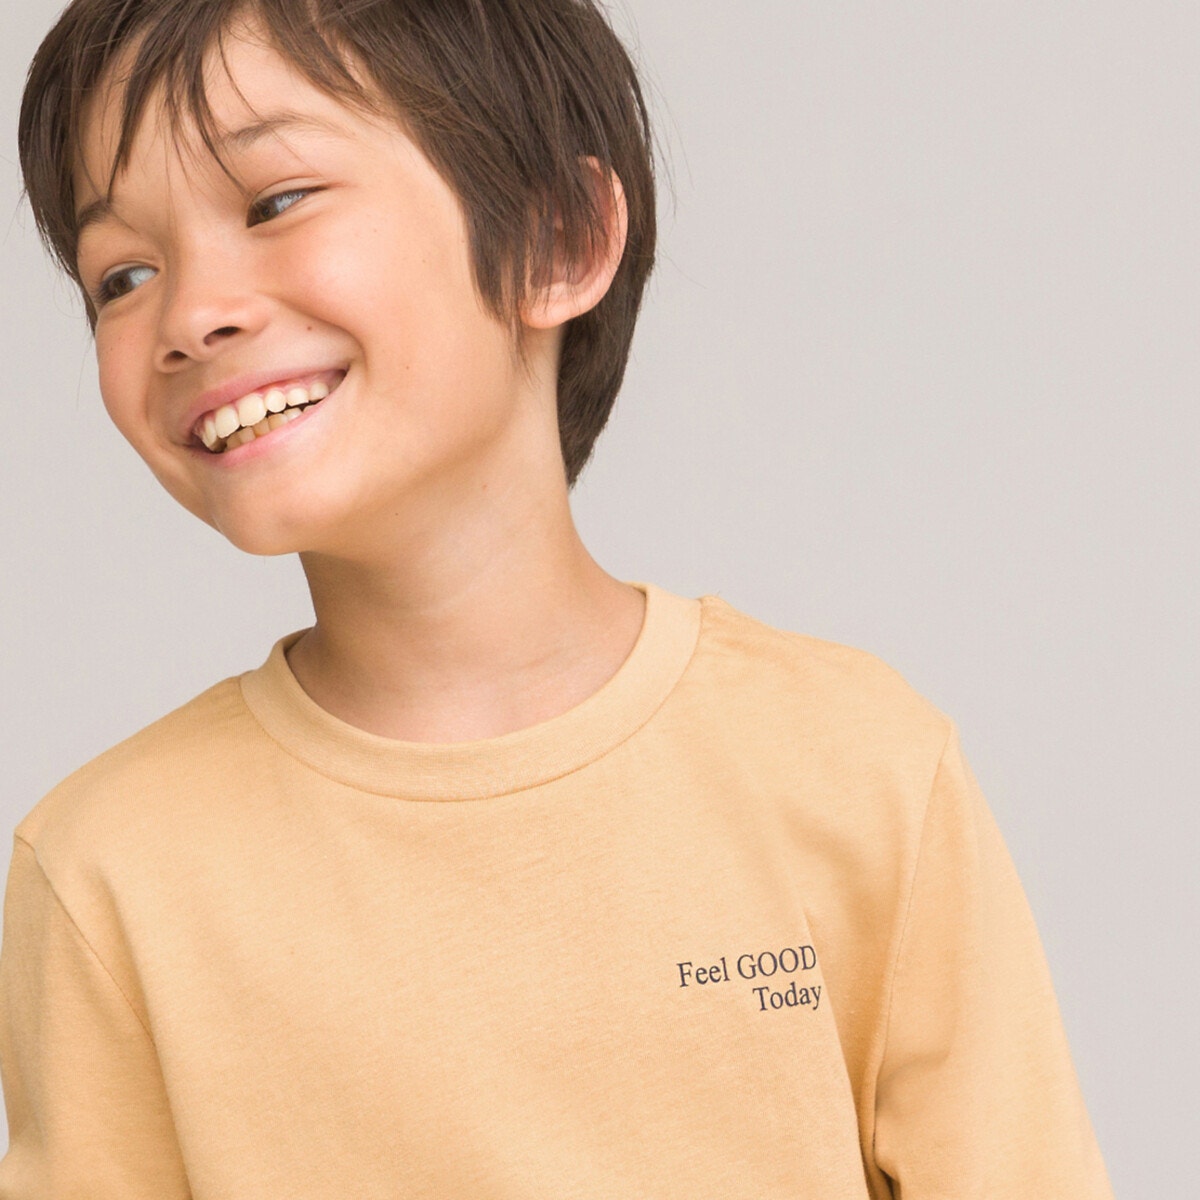 Μόδα > Παιδικά > Αγόρι > T-shirt, πόλο > Μακριά μανίκια Σετ 3 μακρυμάνικες μπλούζες με μήνυμα